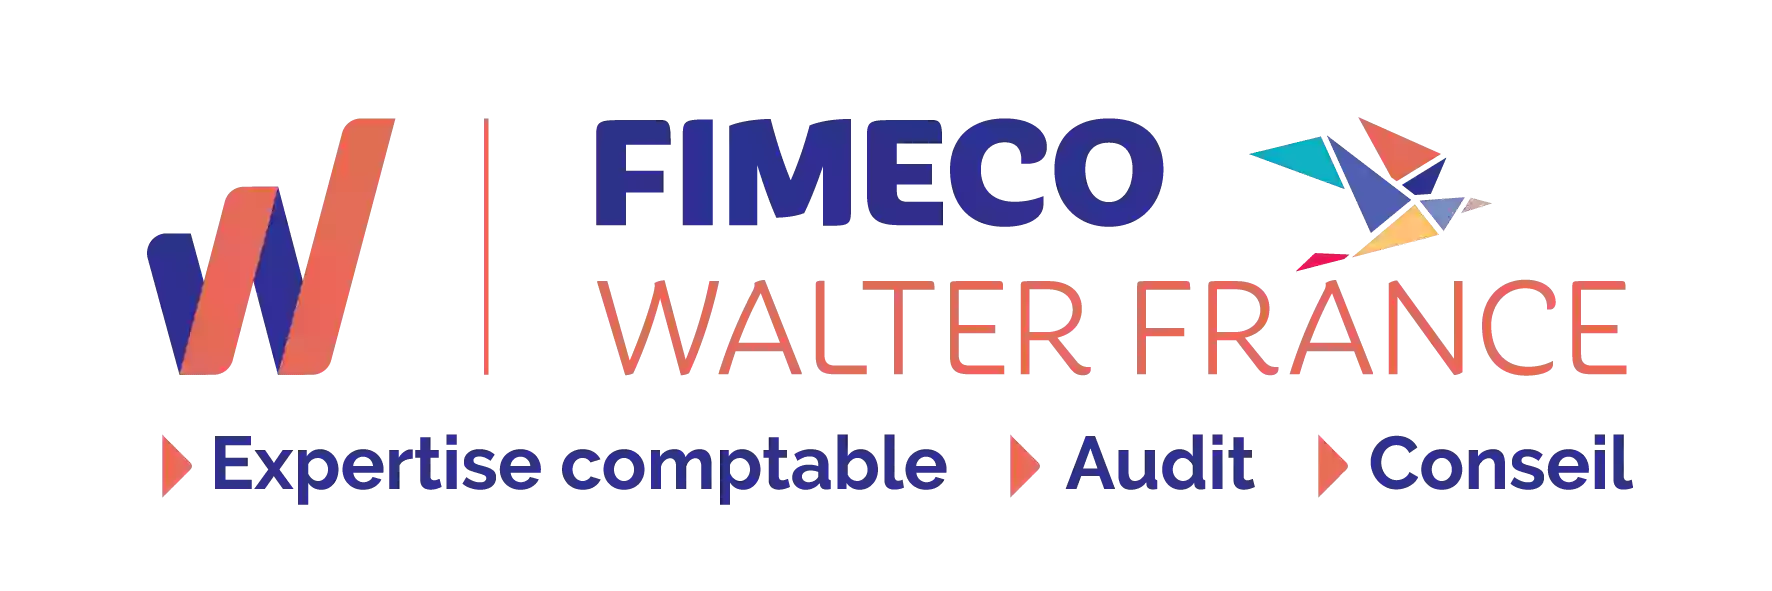 Fimeco Walter France-COMPTABLE - CABINET EXPERT COMPTABLE - COMMISSAIRES AUX COMPTES-Saintes-Charente Maritime-Saujon